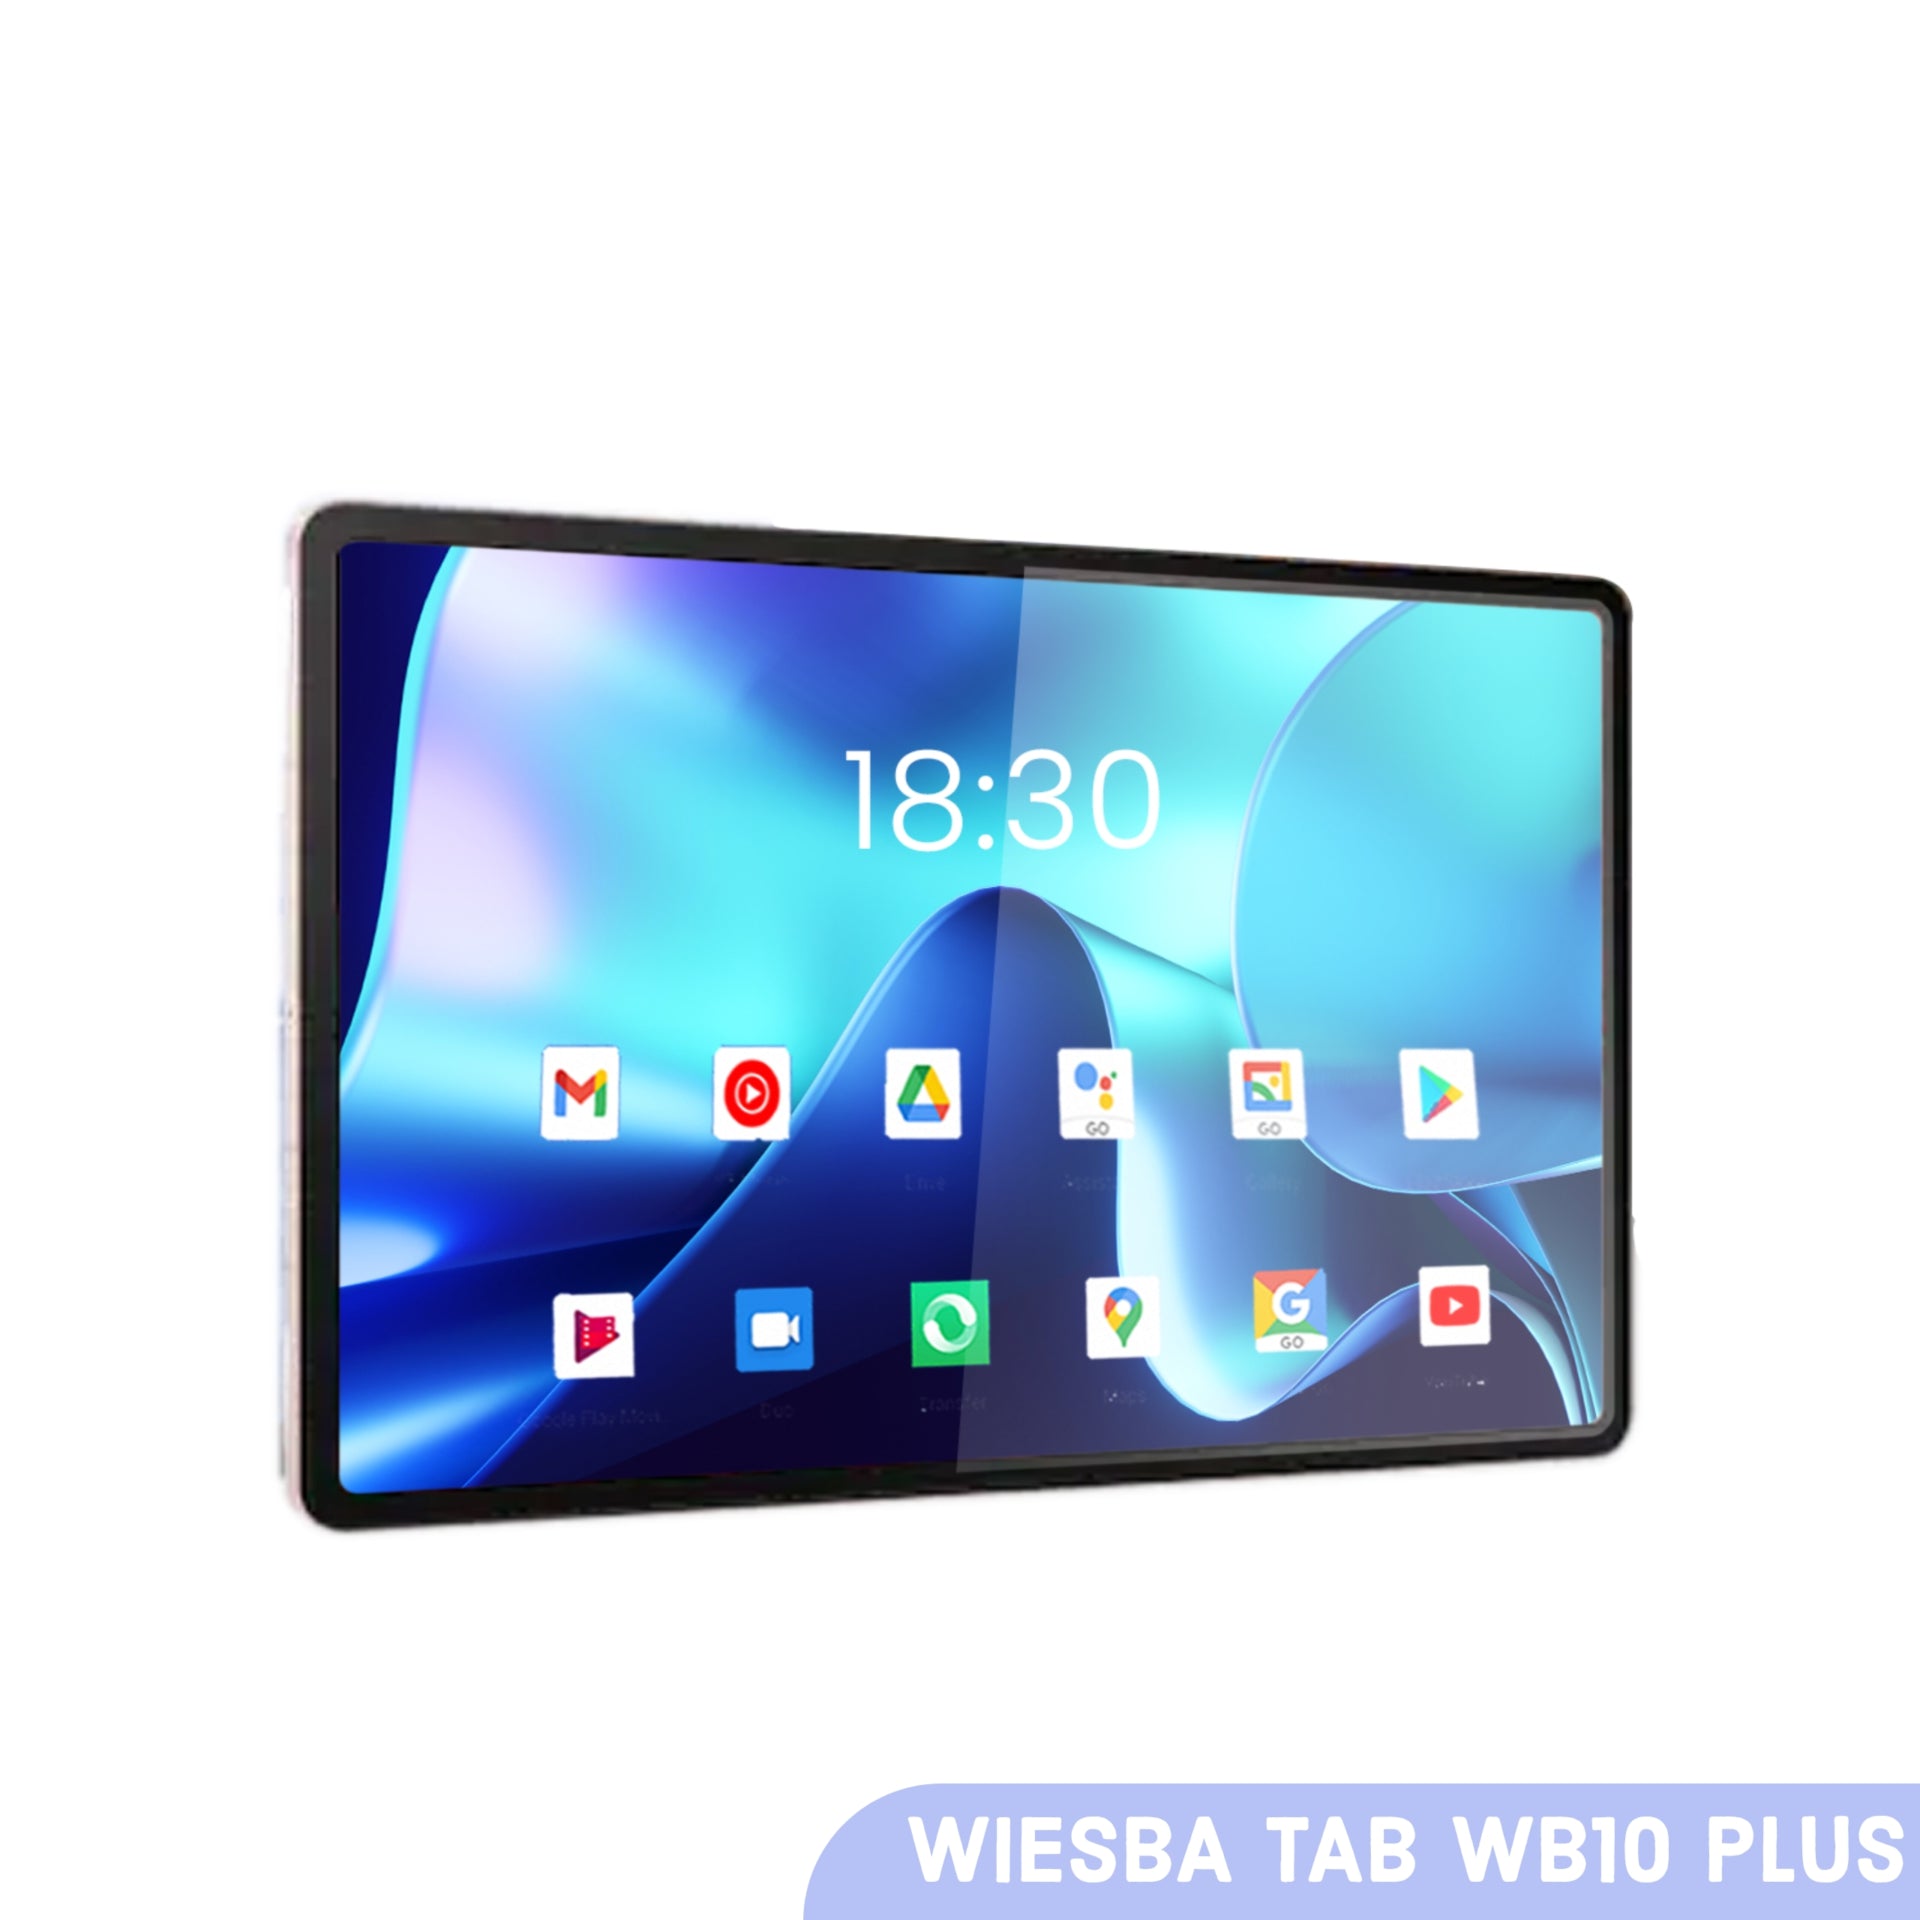 Wiesba Tab WB10 Plus Android tablet 10.4"